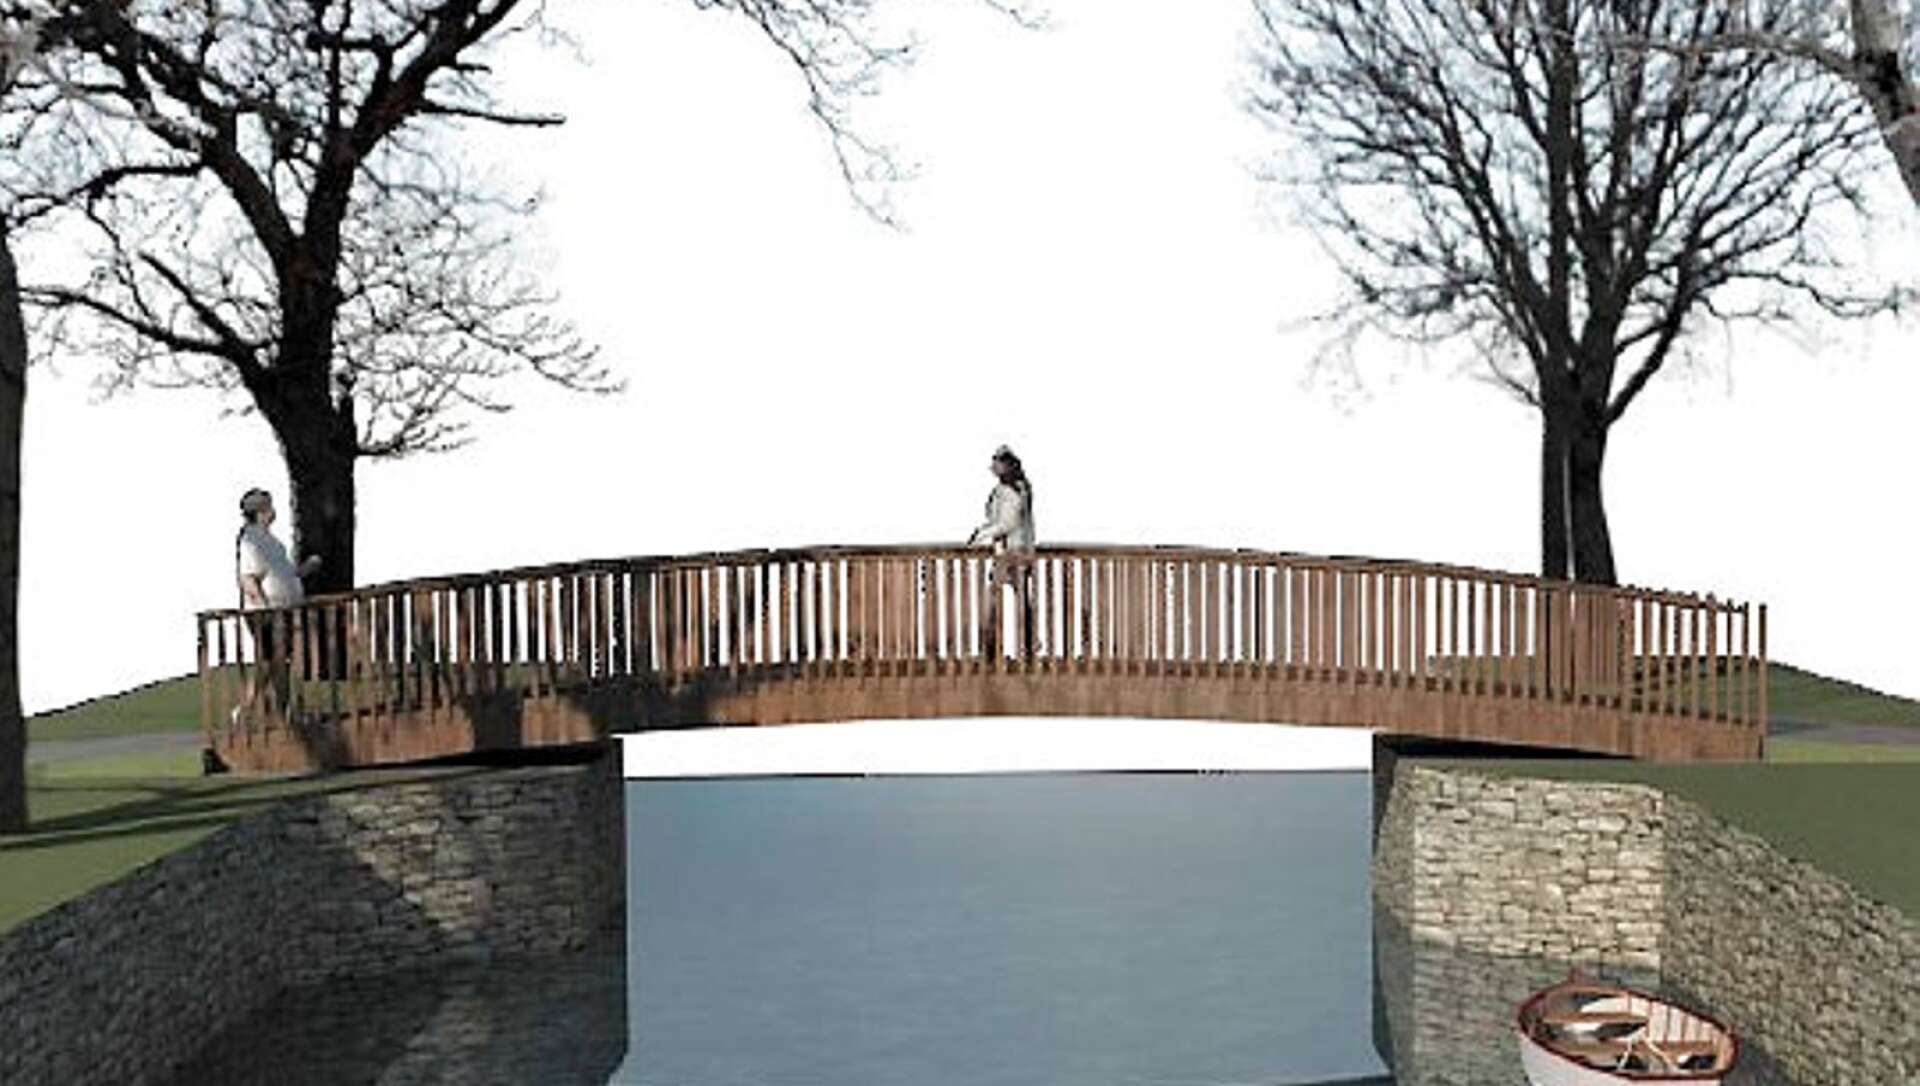 Så här är den tänkt att se ut, den nya träbron i Skåpafors.